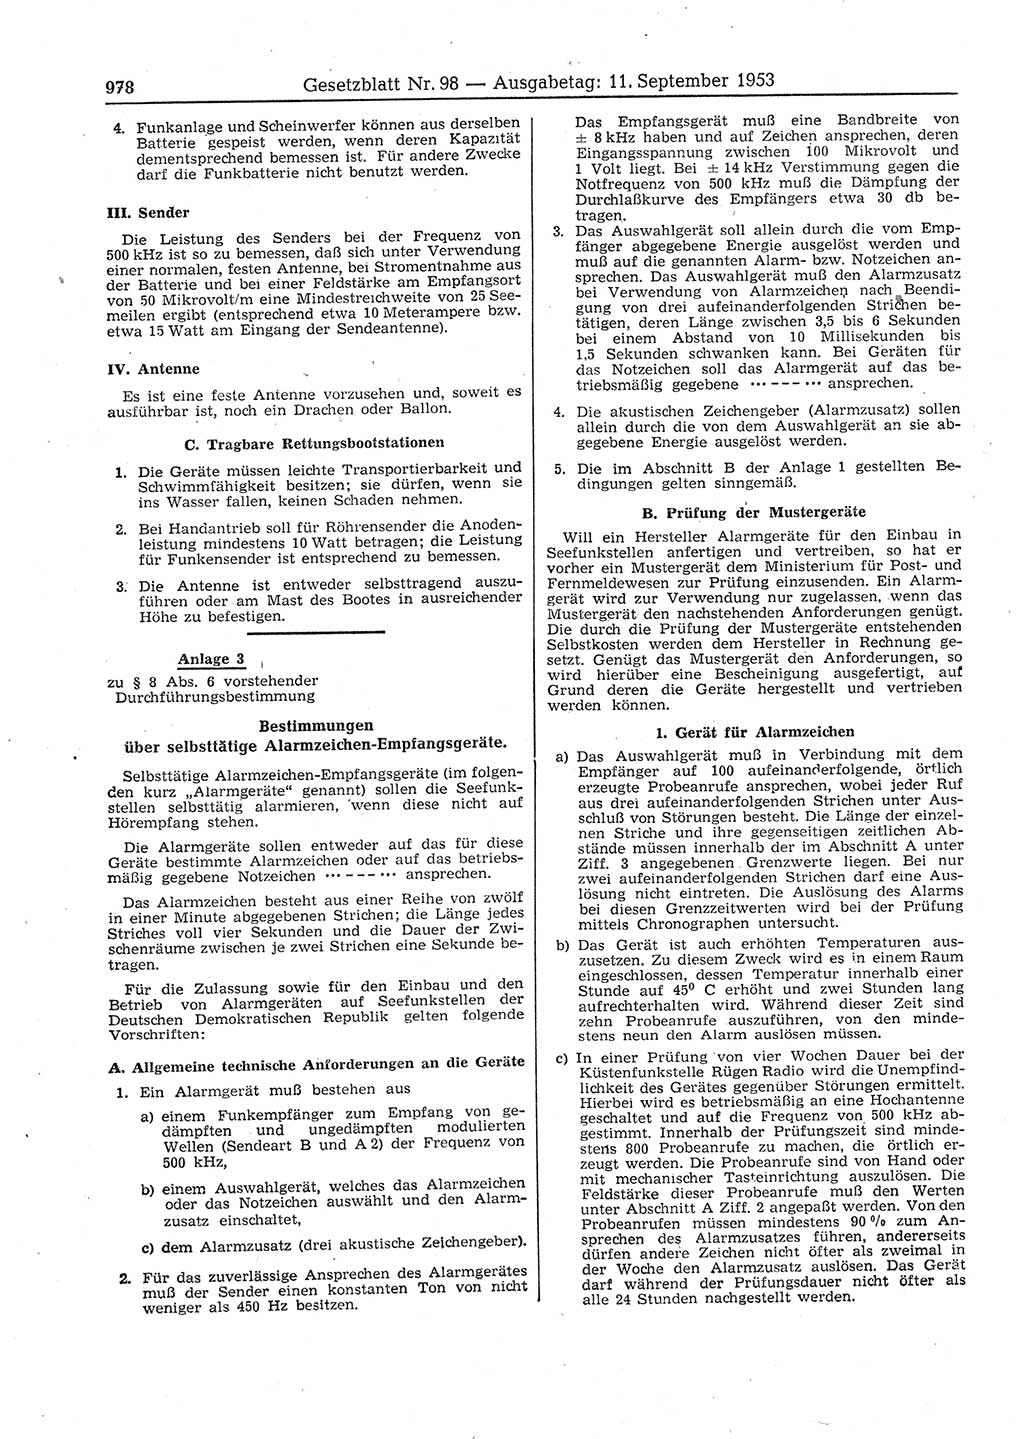 Gesetzblatt (GBl.) der Deutschen Demokratischen Republik (DDR) 1953, Seite 978 (GBl. DDR 1953, S. 978)